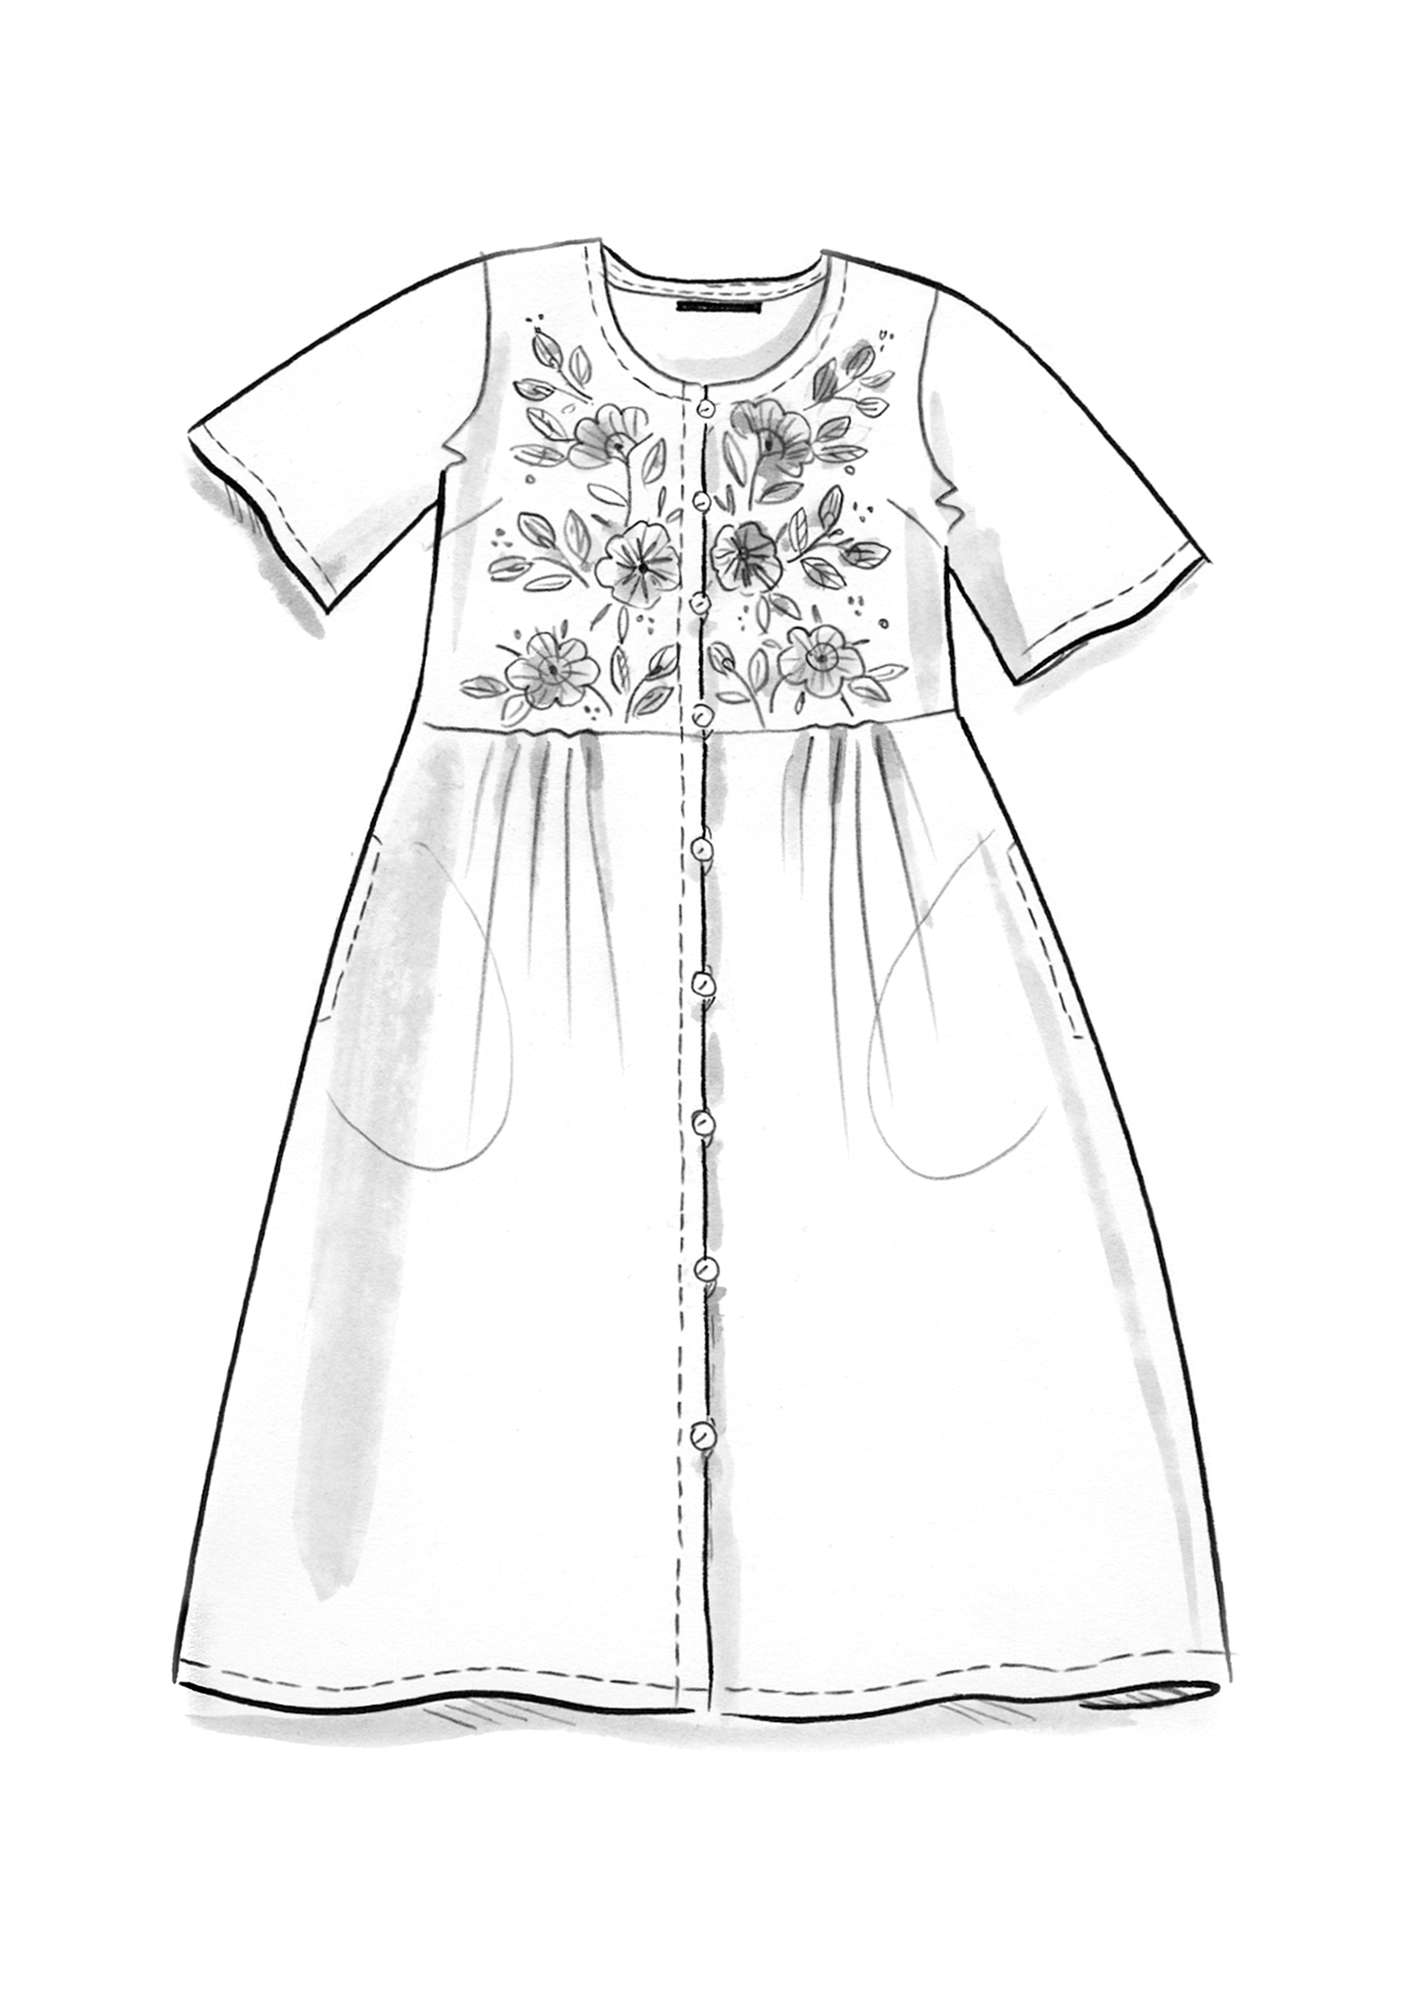 Vævet kjole  Margrethe  i økologisk bomuld/silke aubergine